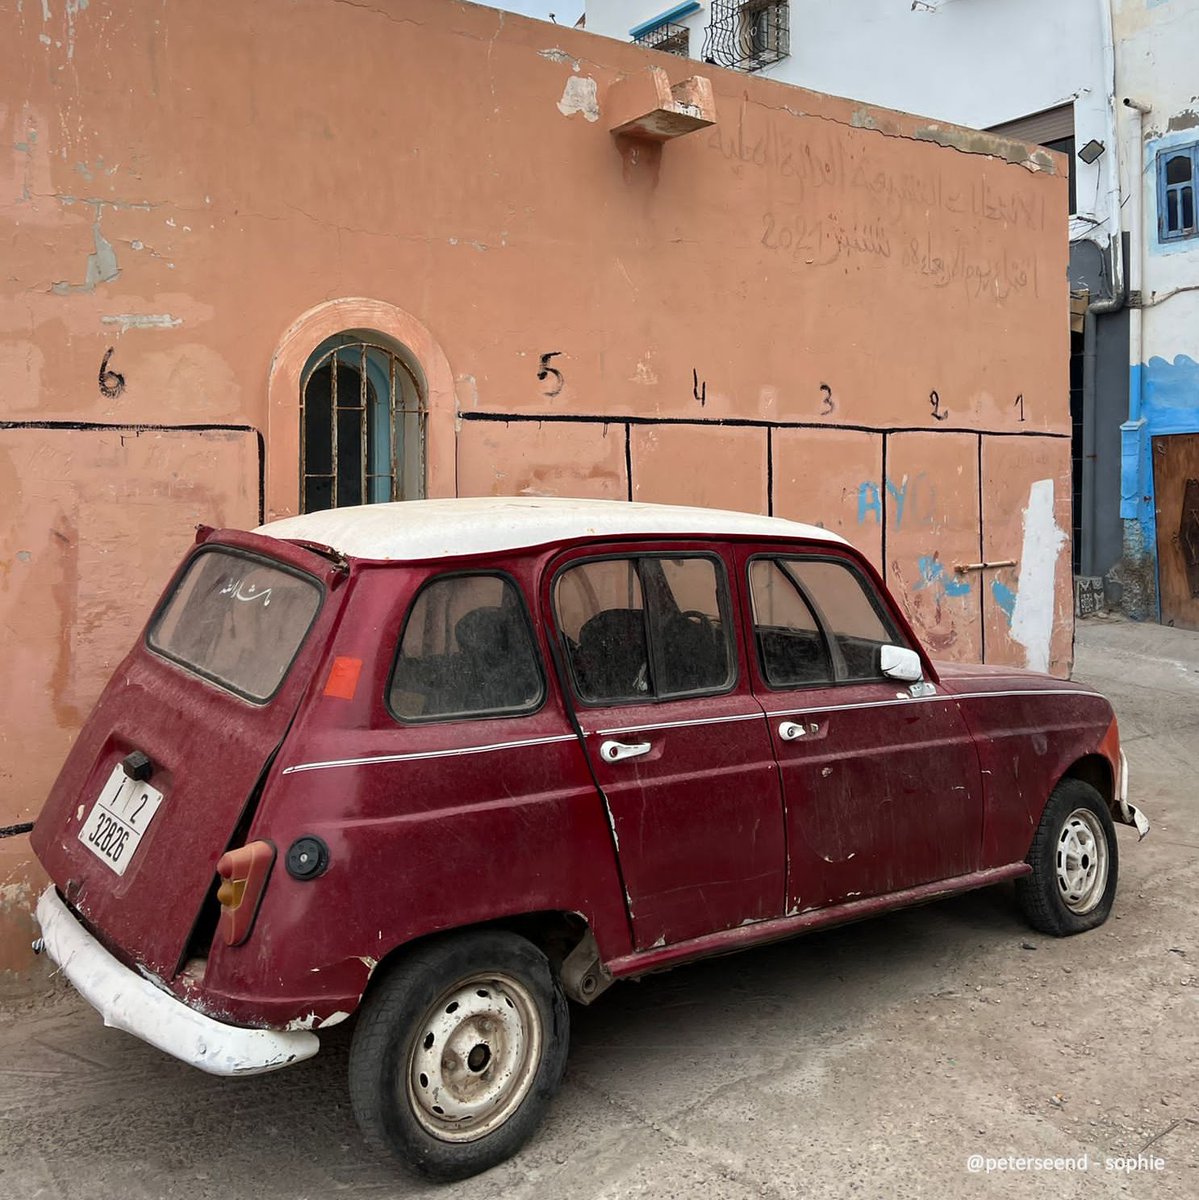 Van onze correspondent uit Afrika. 
Taghazout, Marokko. #renault4 met inklapbare spiegel en afneembare achterklep. #surfparadijs 

open.spotify.com/track/6lPbvFOO…